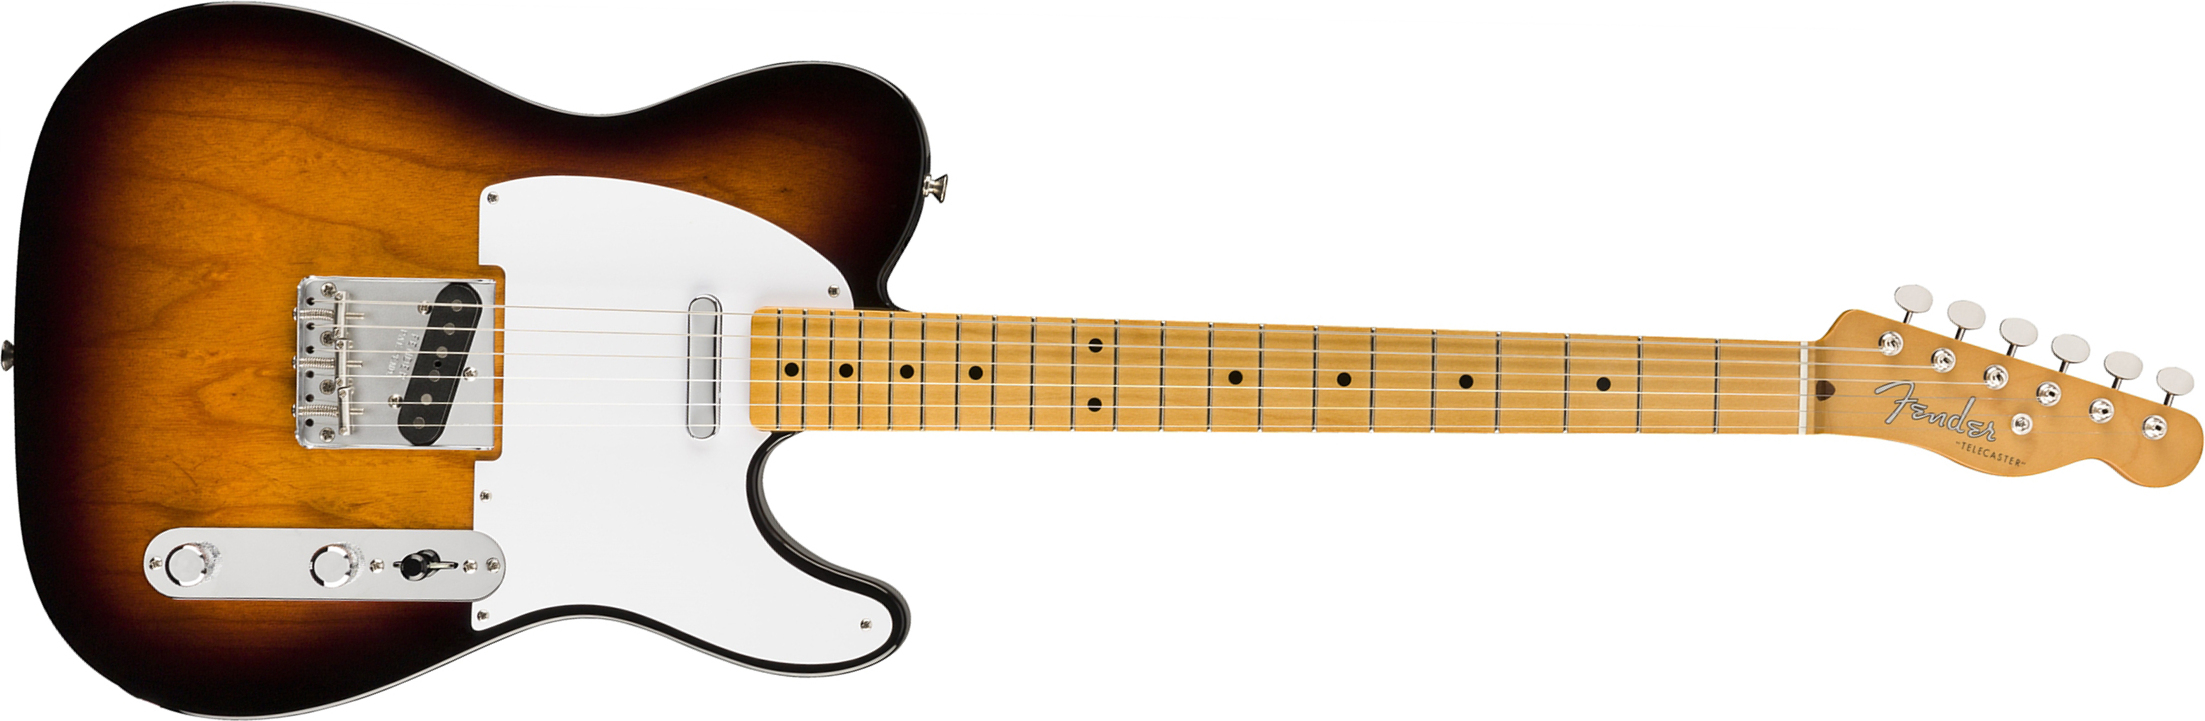 Fender Tele 50s Vintera Vintage Mex Mn - 2-color Sunburst - Guitarra eléctrica con forma de tel - Main picture